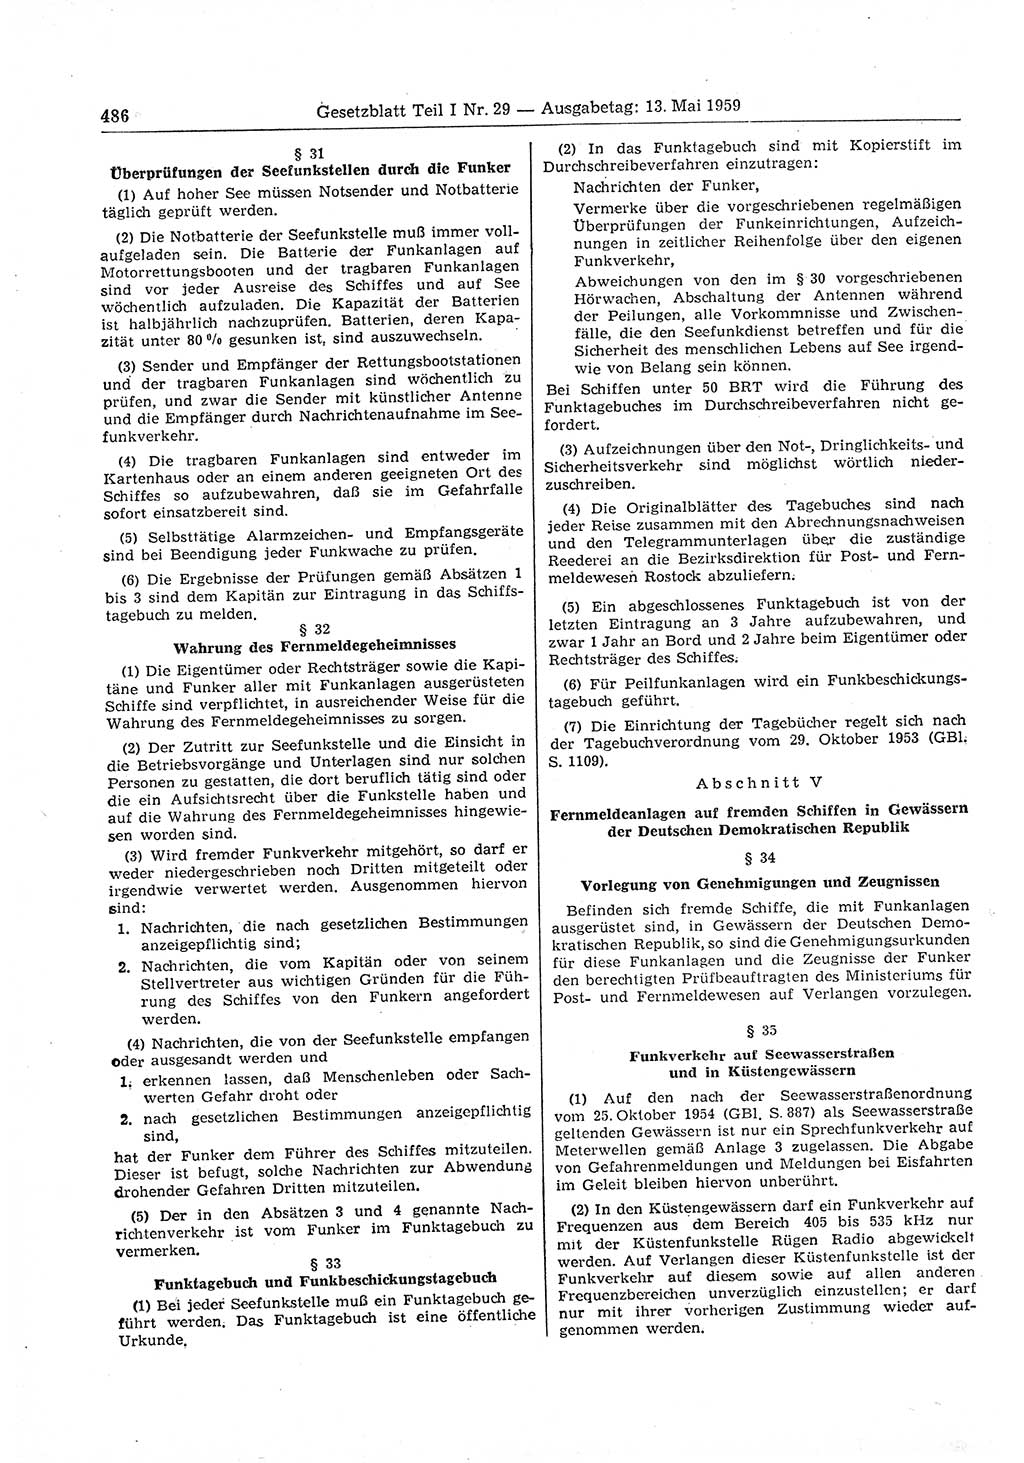 Gesetzblatt (GBl.) der Deutschen Demokratischen Republik (DDR) Teil Ⅰ 1959, Seite 486 (GBl. DDR Ⅰ 1959, S. 486)